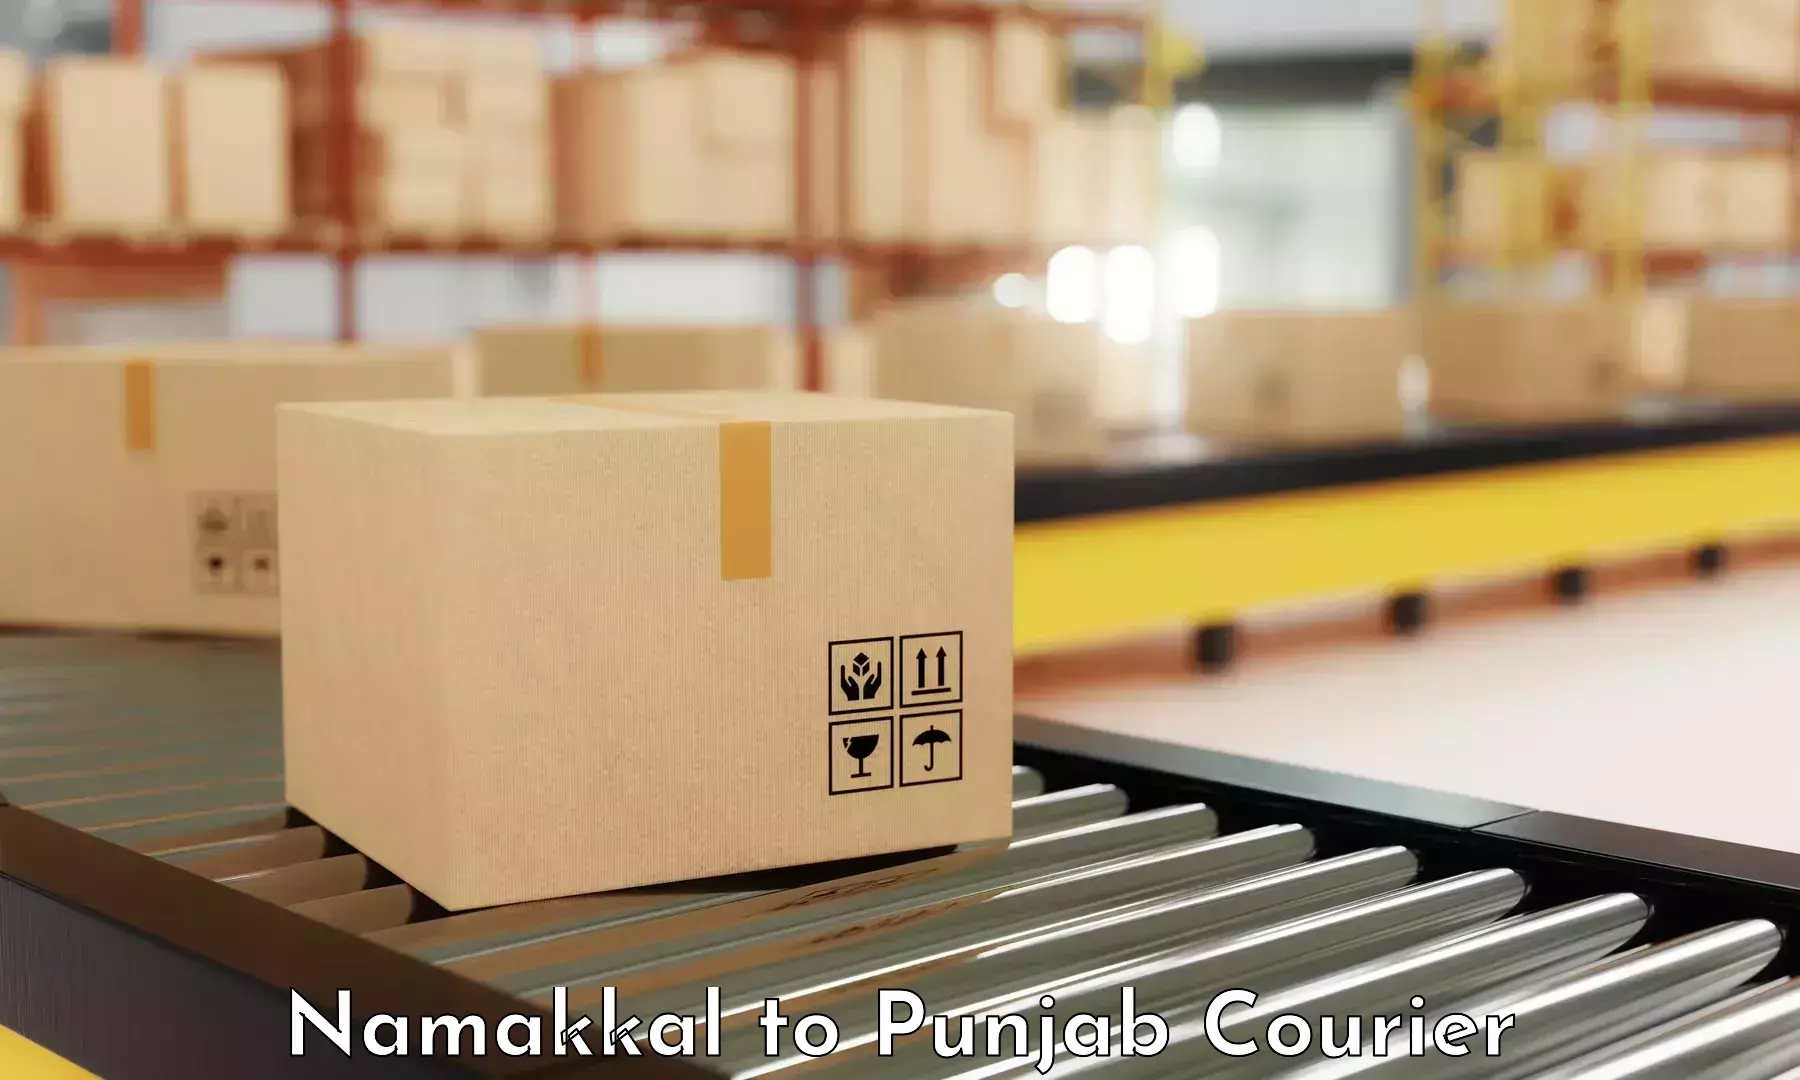 Customer-centric shipping Namakkal to Barnala